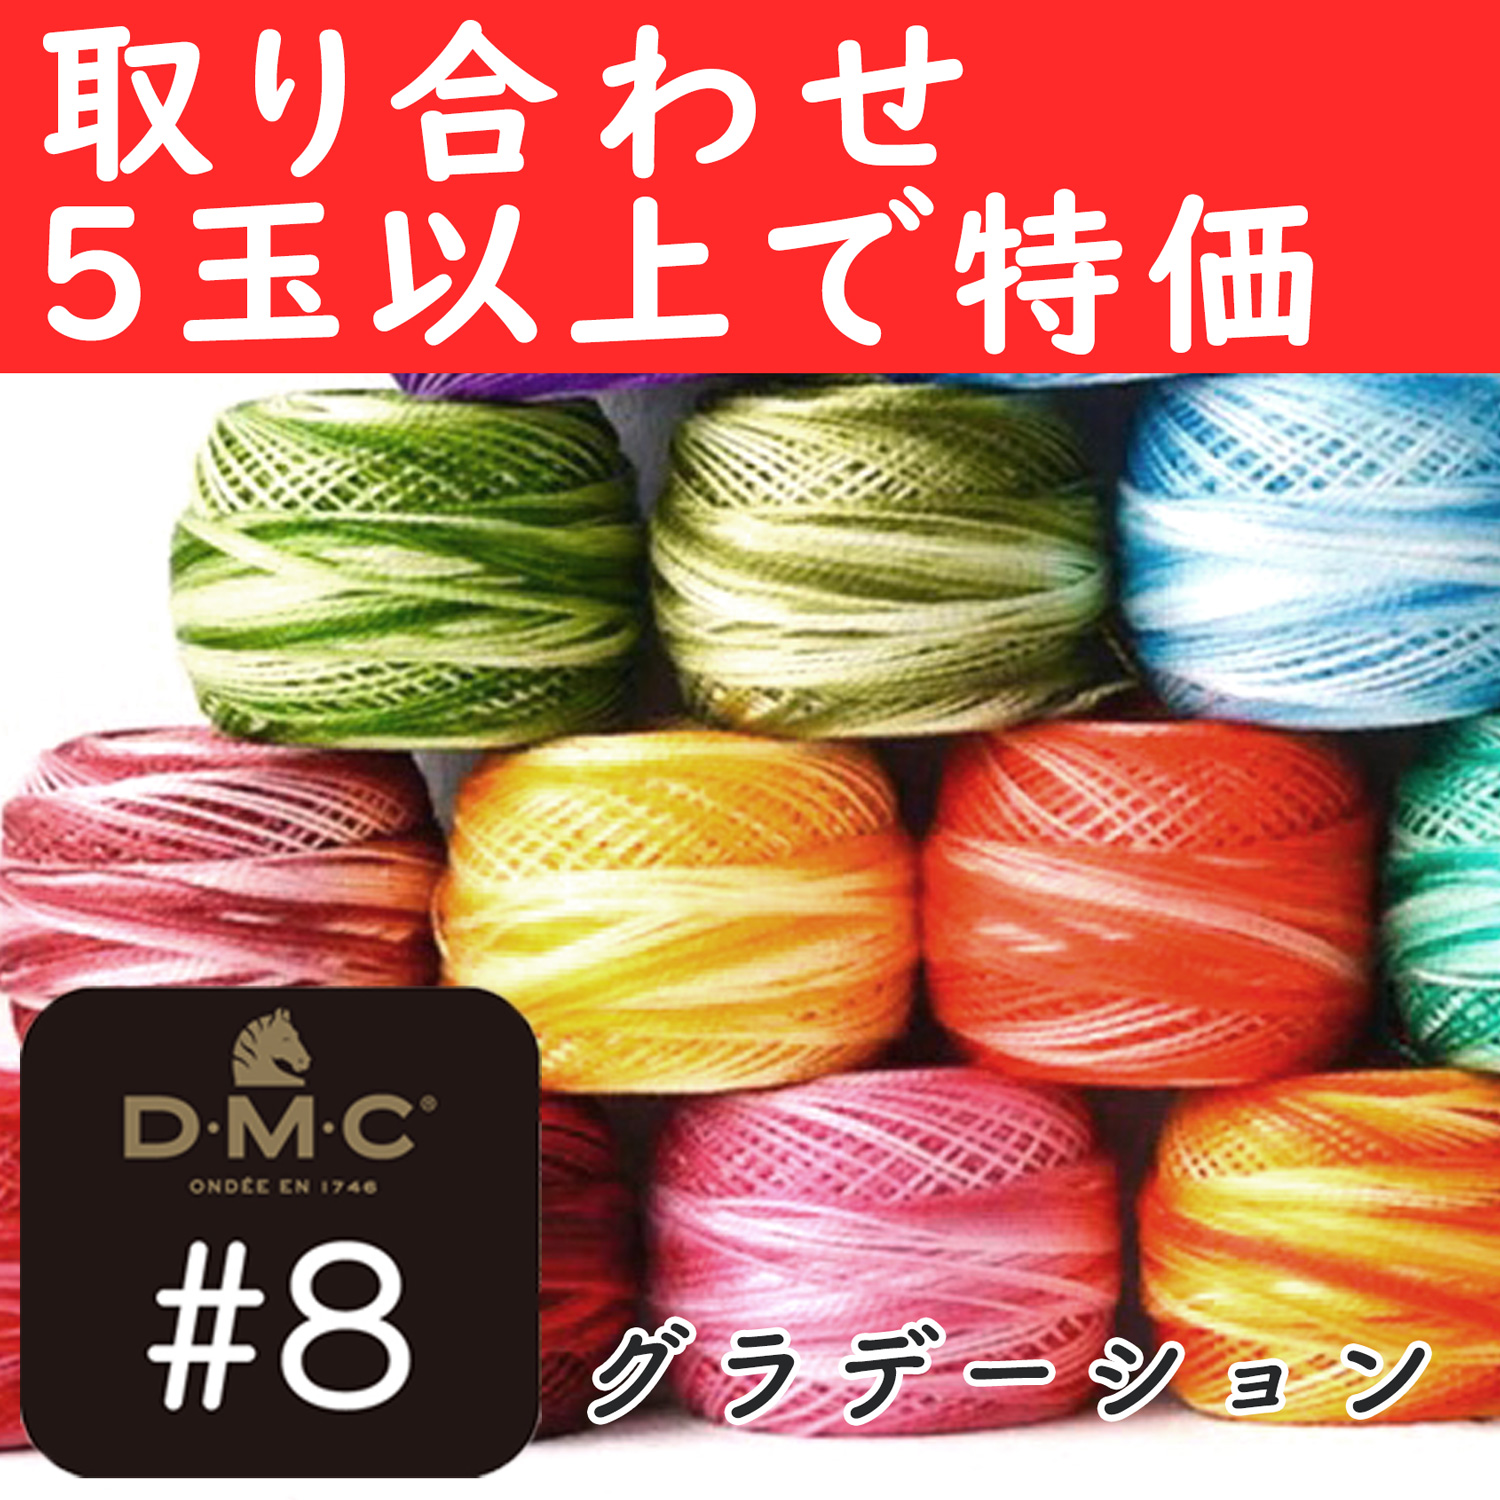 DMC8-OVER5 DMC刺しゅう糸 グラデーション #8×80m巻　取り合わせ5玉以上で特価  (玉)